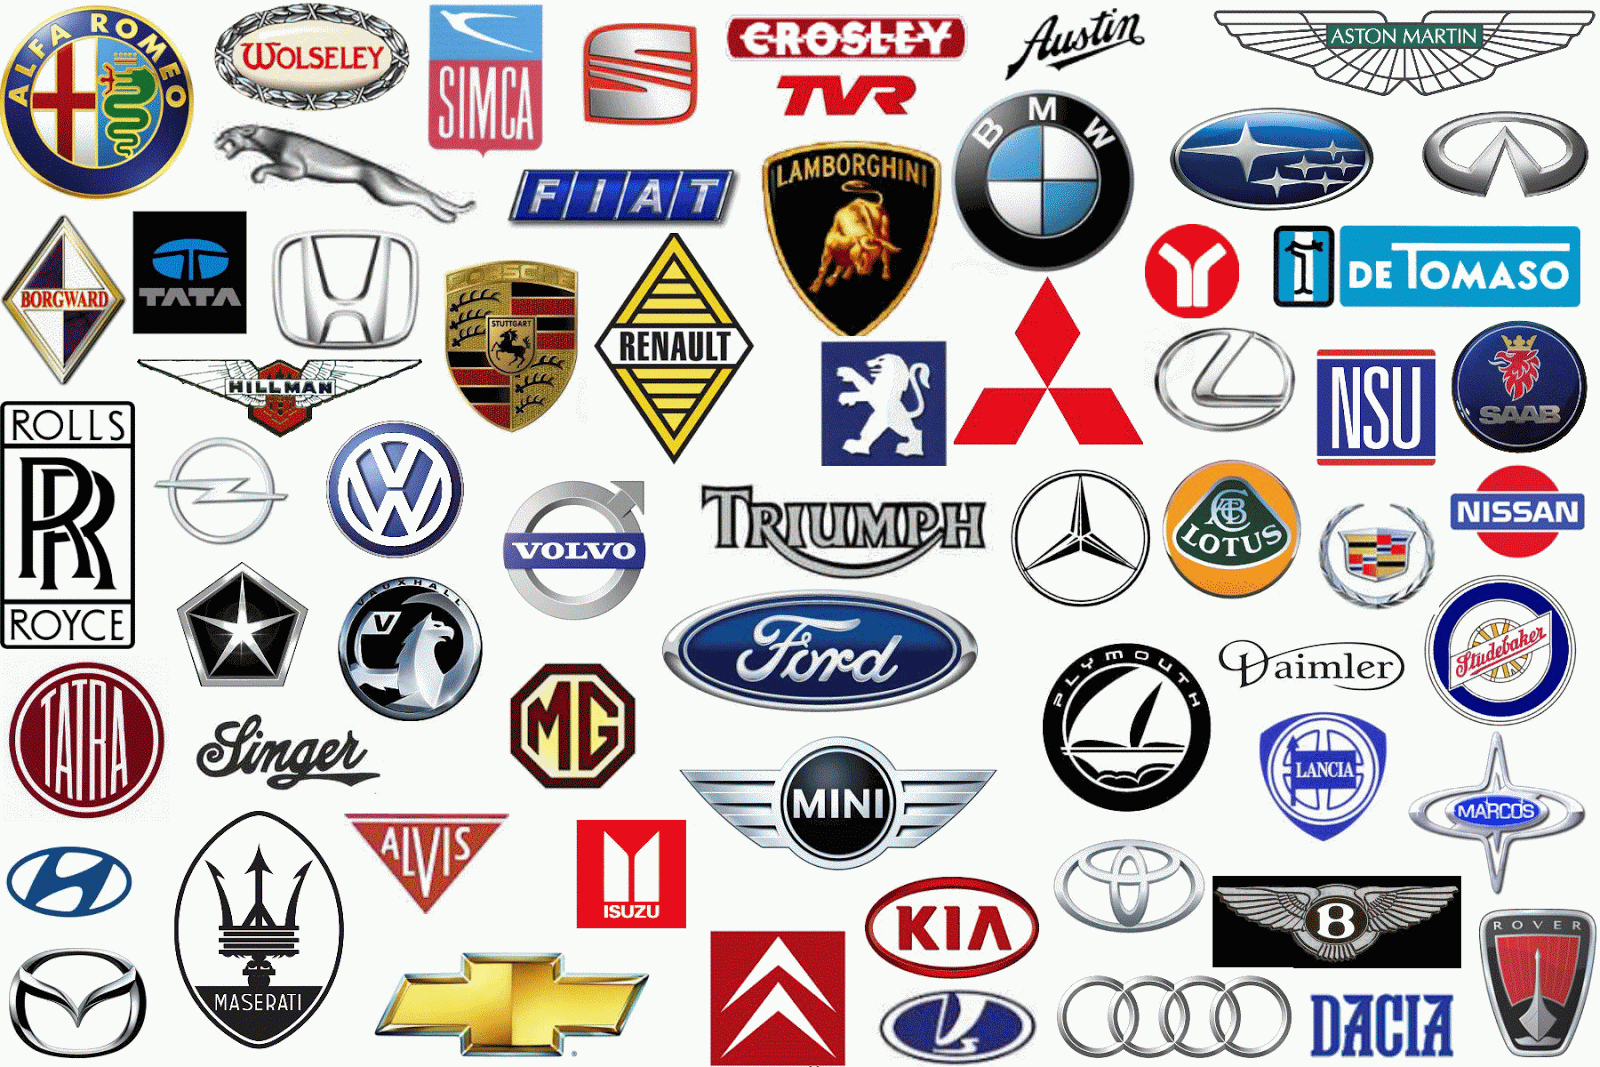 Luxury Car Brand Logo - luxury car logos - Kleo.wagenaardentistry.com